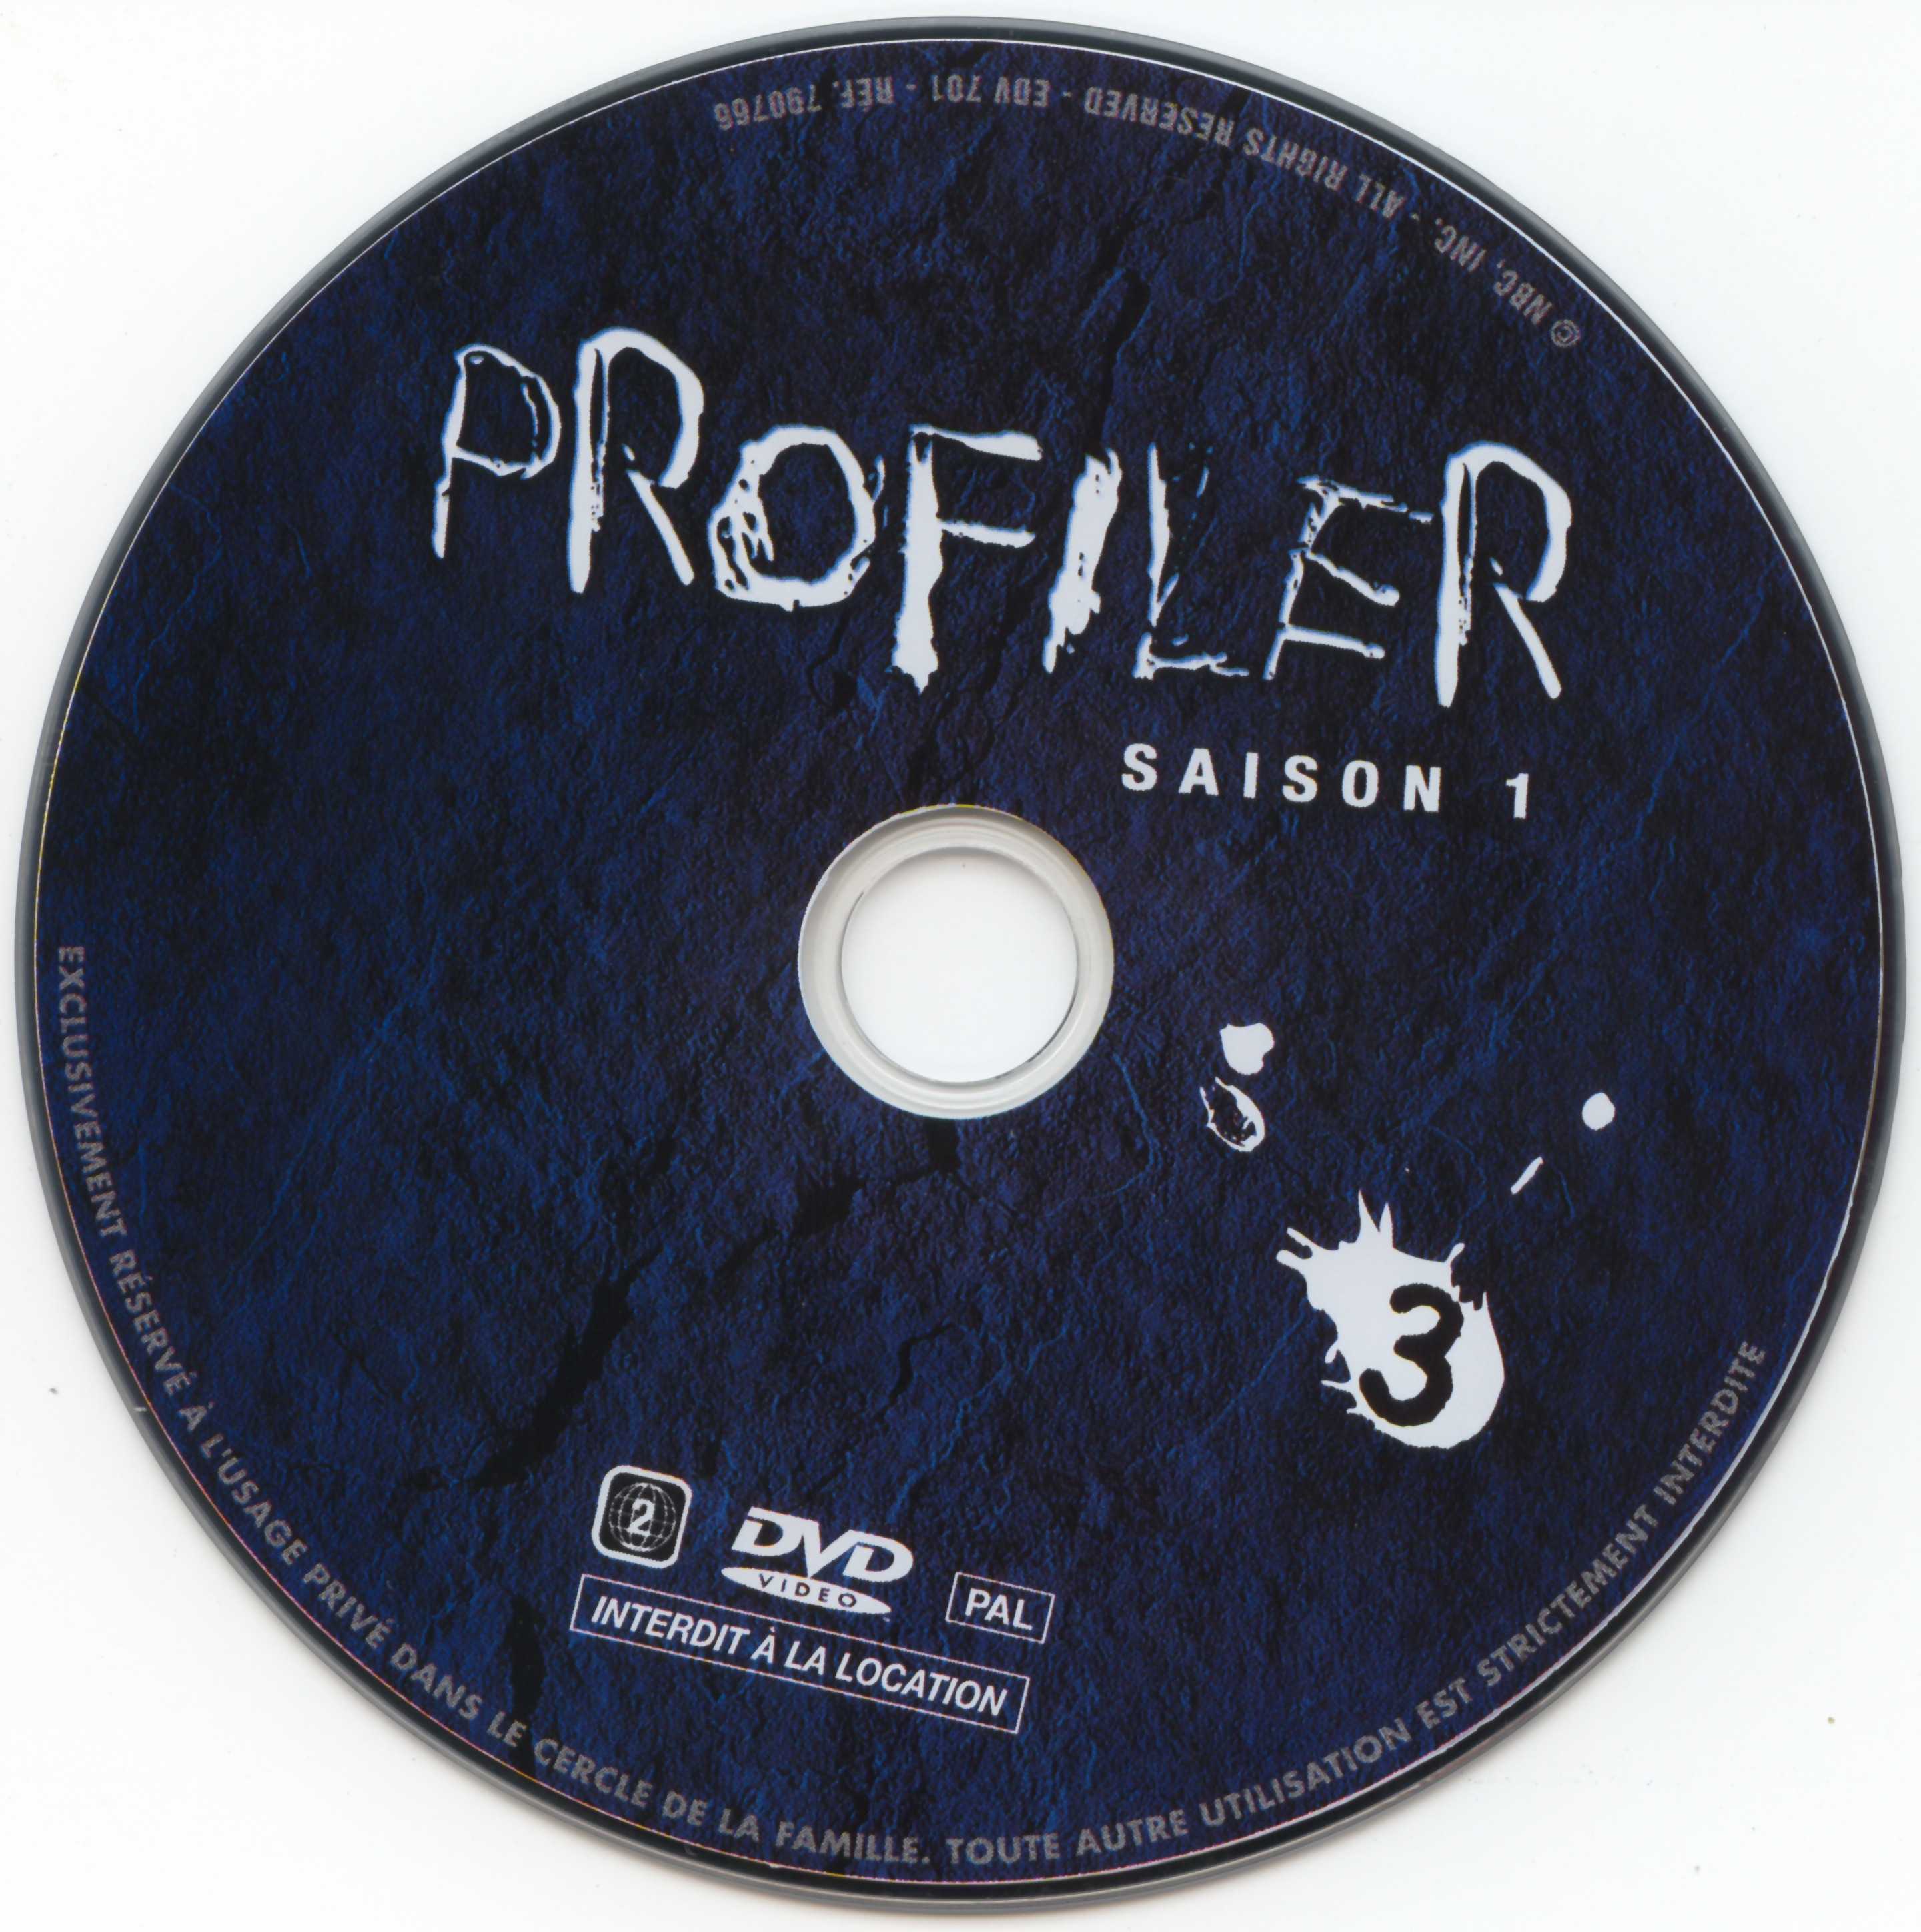 Profiler saison 1 DVD 3